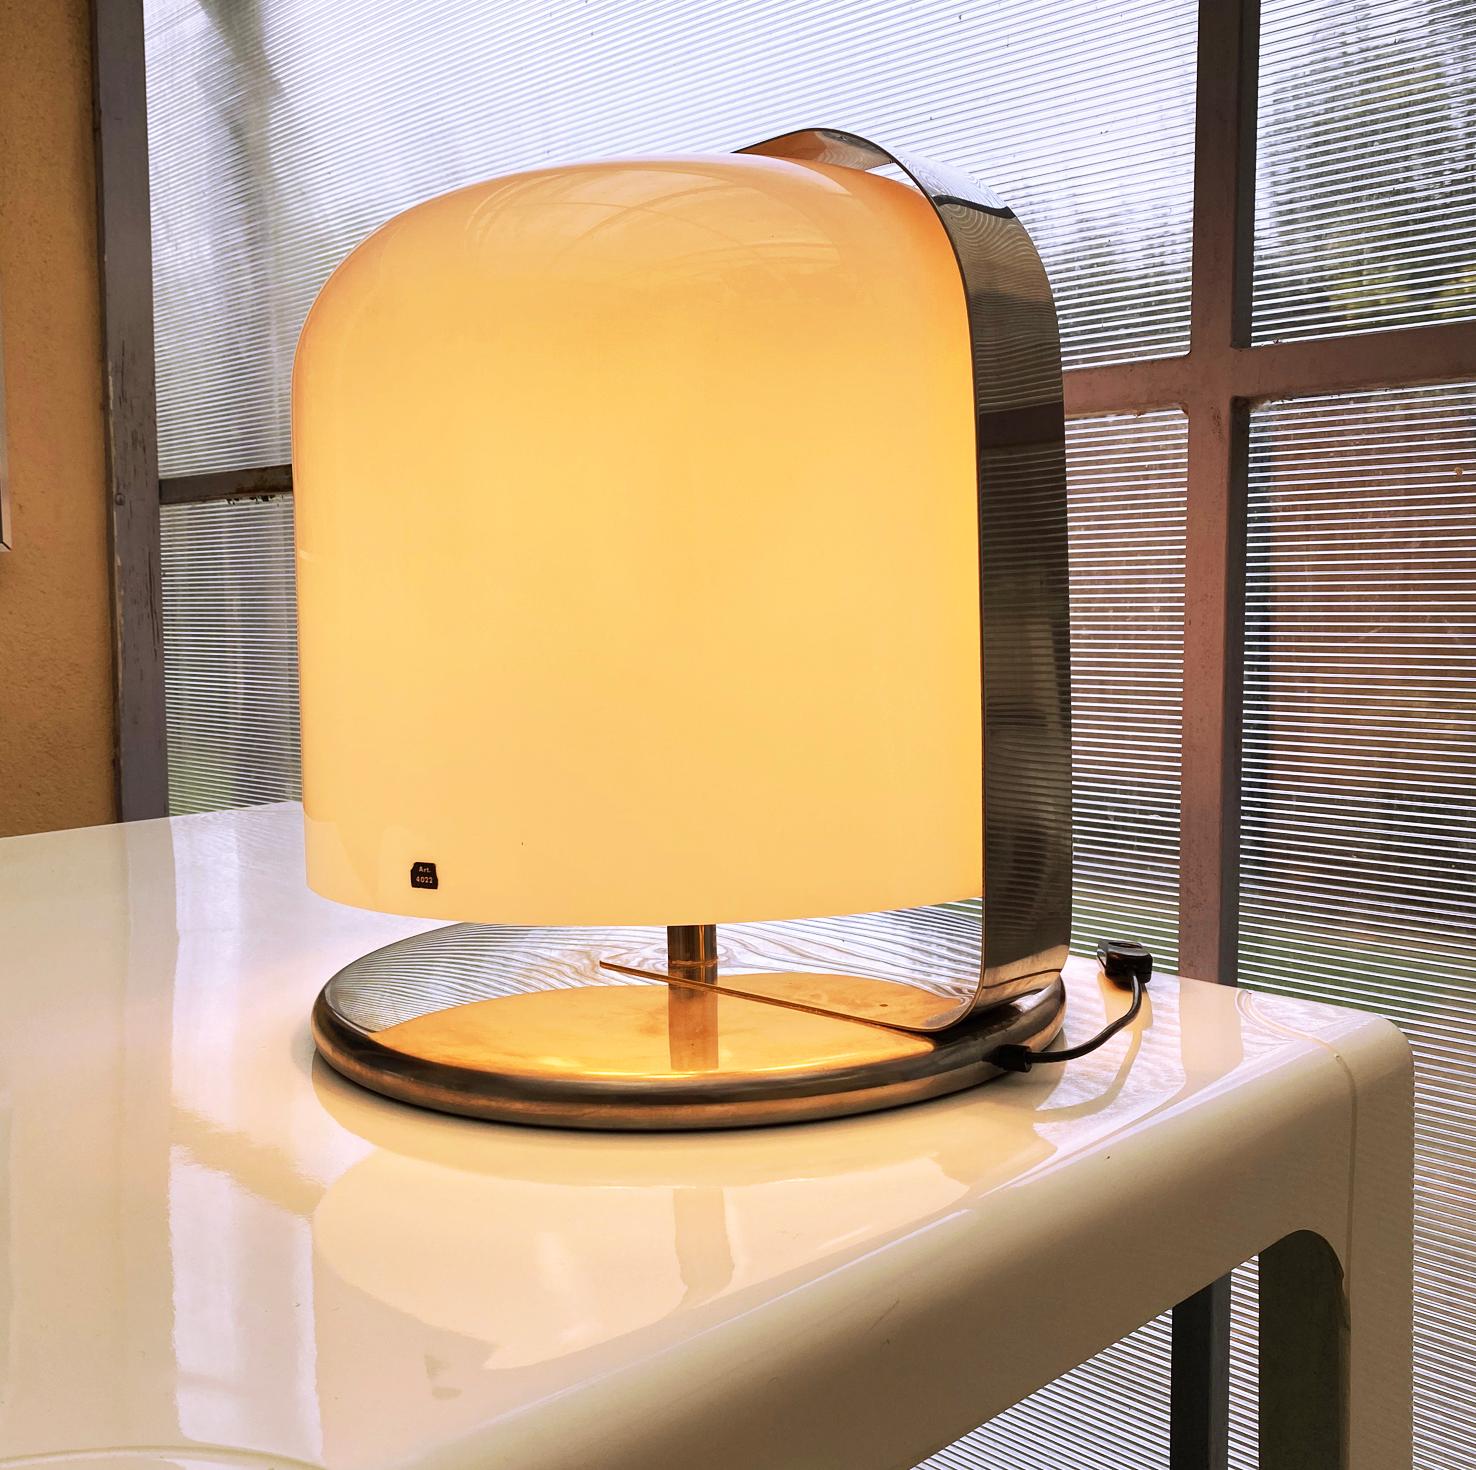 Lampe Alvise de Luigi Massoni, 1966
Éditeur : Harvey Guzzini
Dimensions : longueur : 44 cm, largeur ; 44cm, hauteur : 49cm
Matériaux : acier chromé, acrylique
Très bon état.